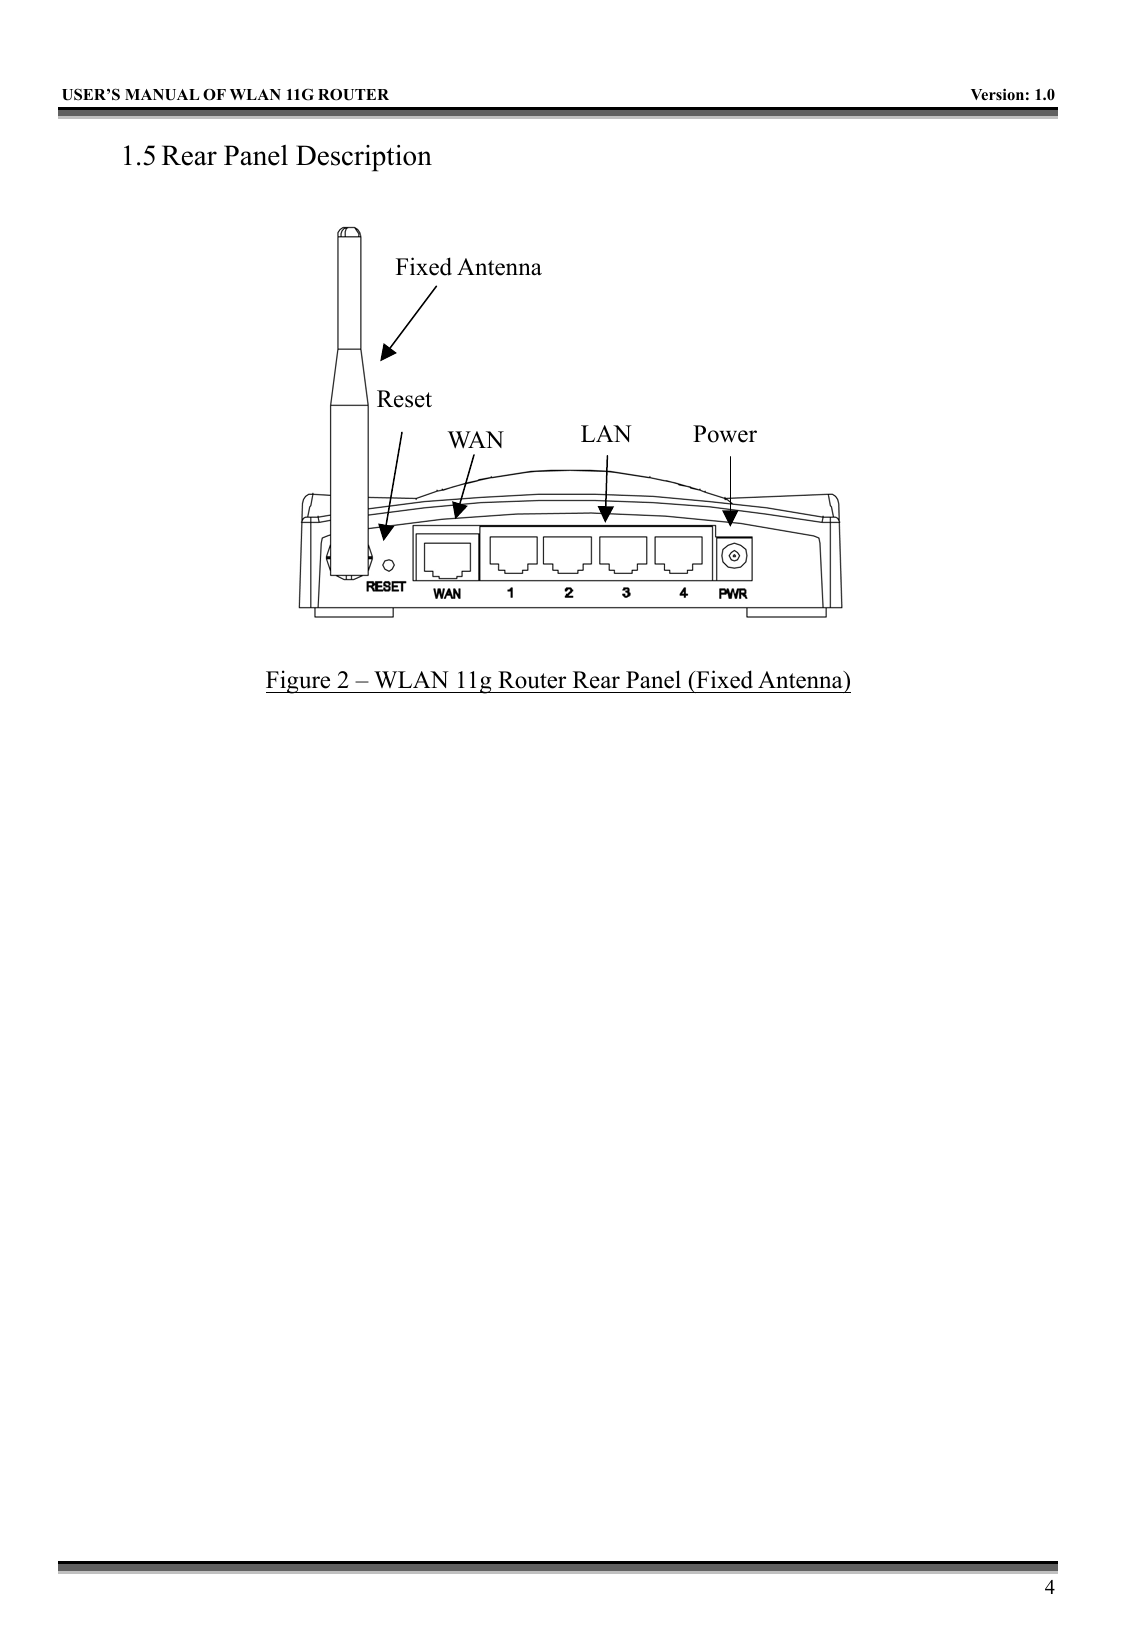   USER’S MANUAL OF WLAN 11G ROUTER    Version: 1.0     4 1.5 Rear Panel Description  Figure 2 – WLAN 11g Router Rear Panel (Fixed Antenna)    WA N LAN PowerFixed AntennaReset  